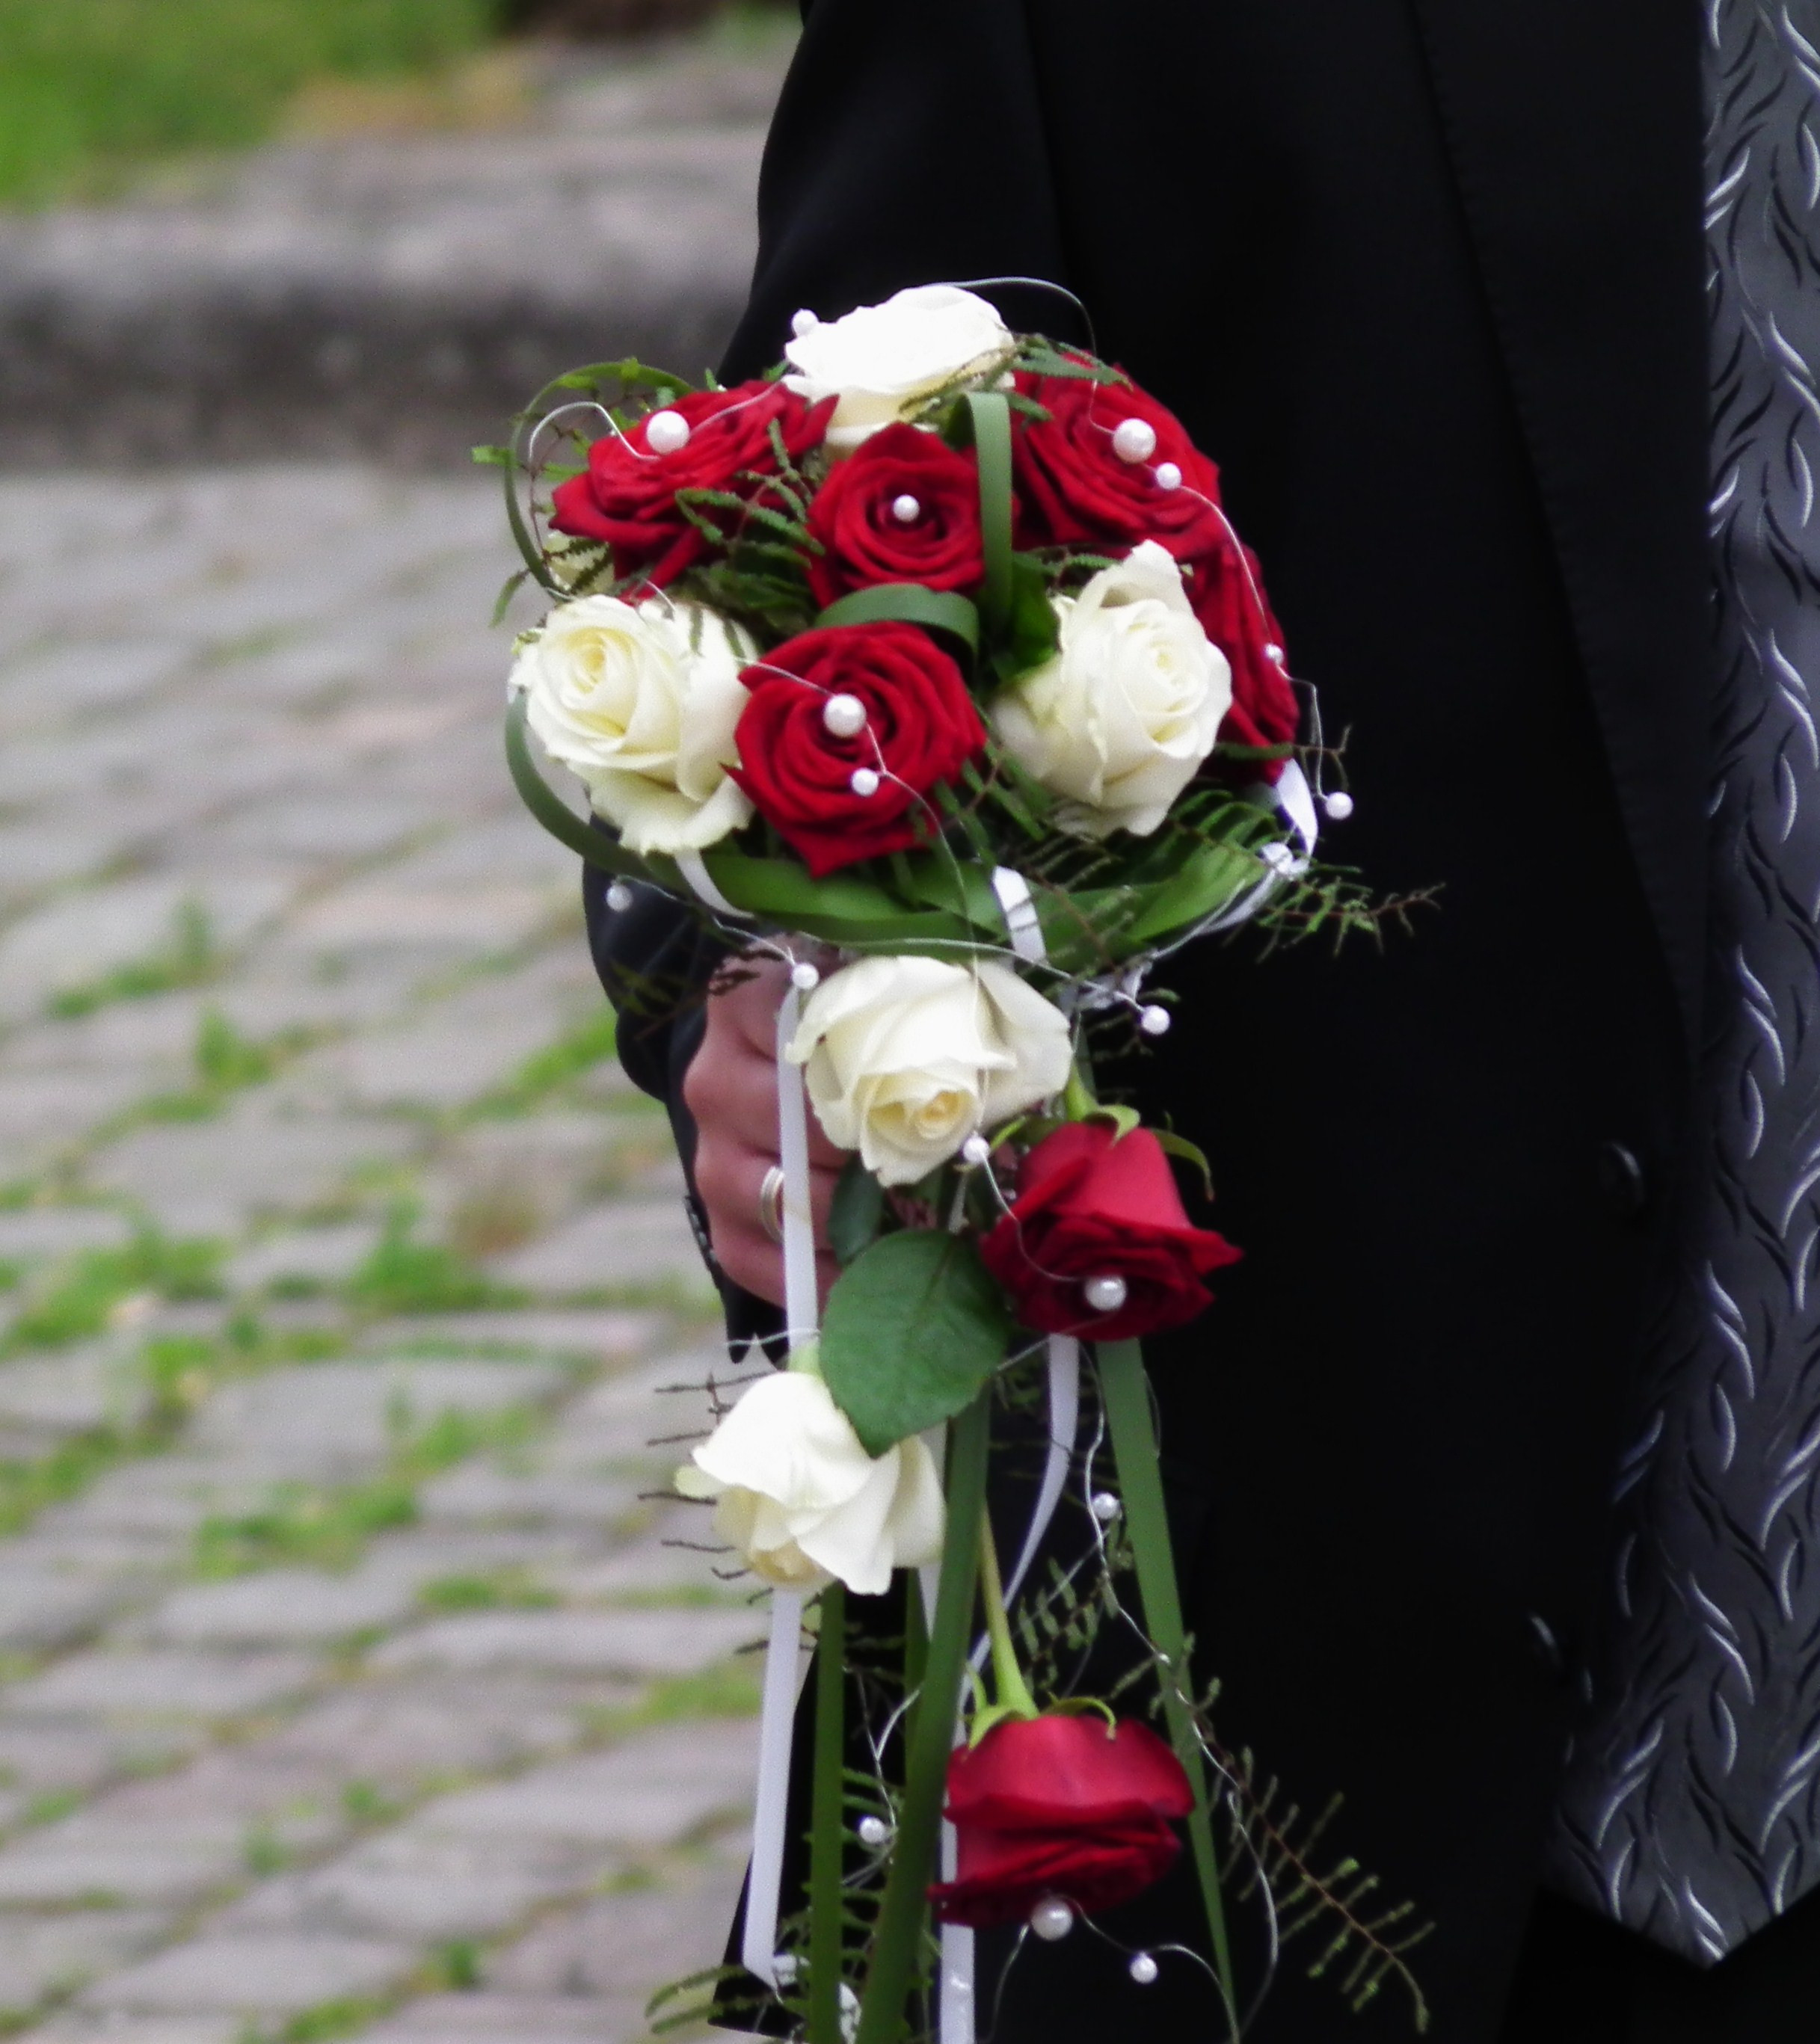 Brautstrauß Weiße Rosen
 File Brautstrauß rote und weiße Rosen JPG Wikimedia mons